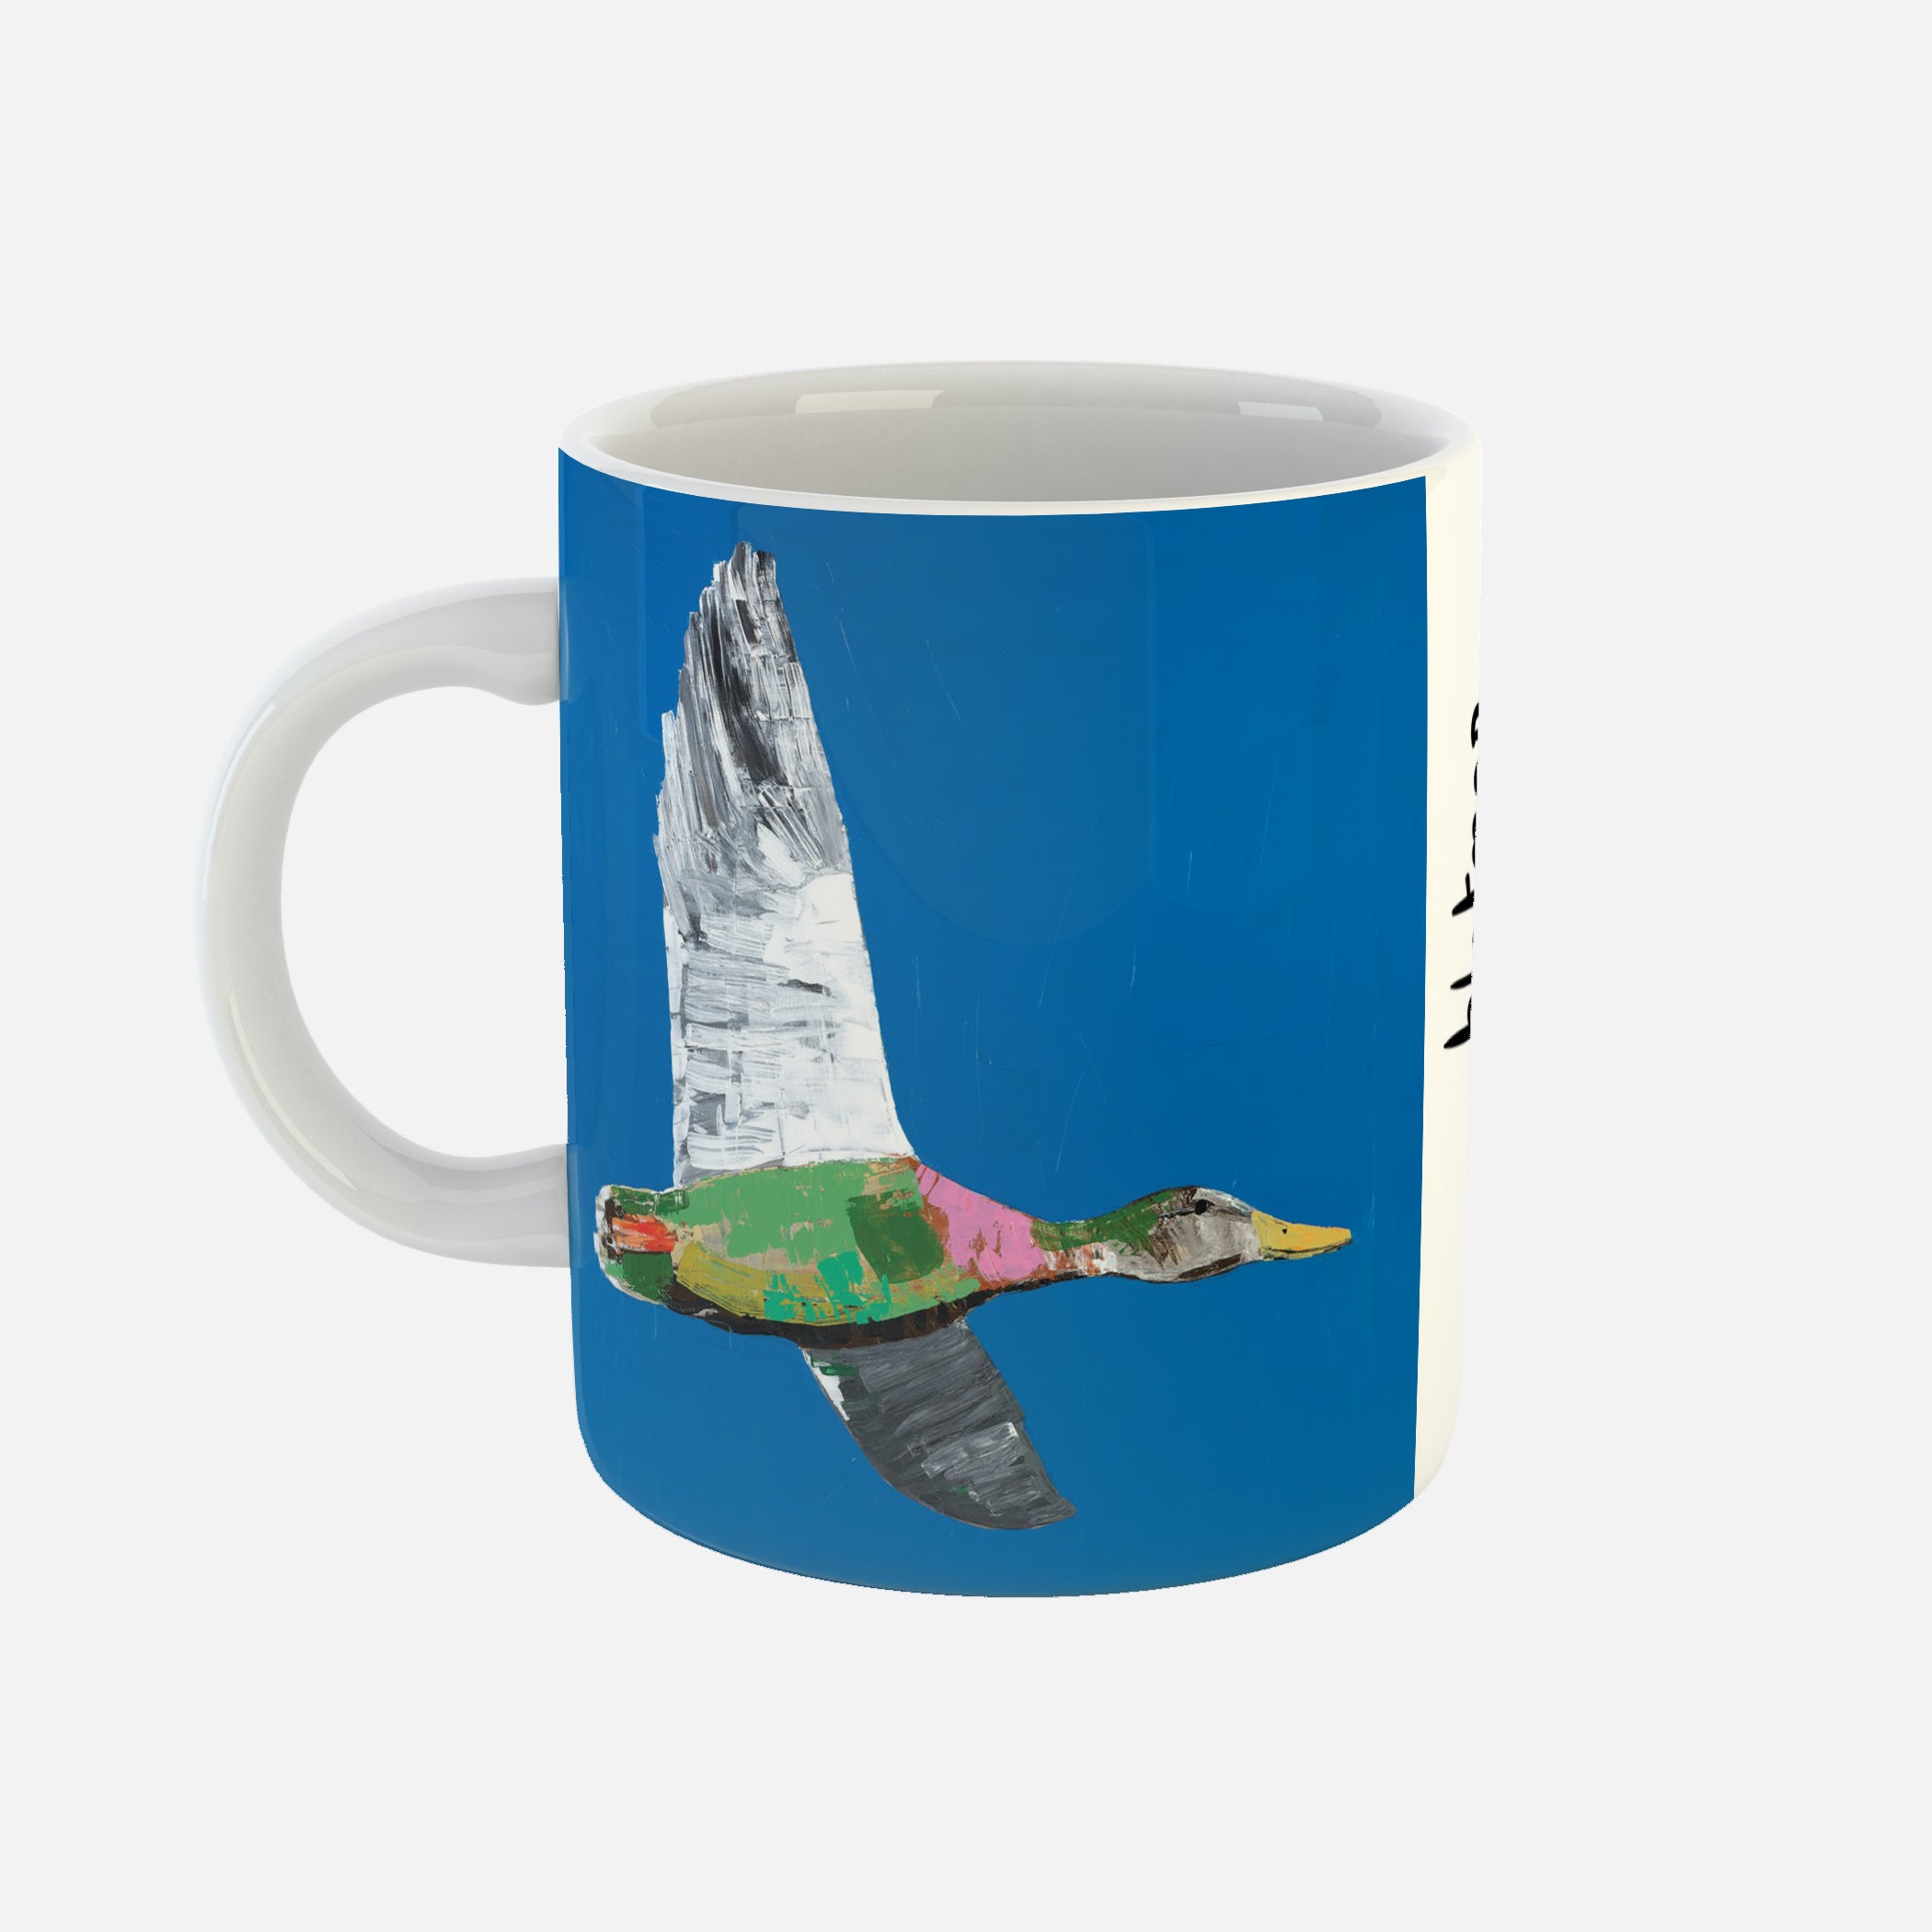 Lucky - Ceramic Mug